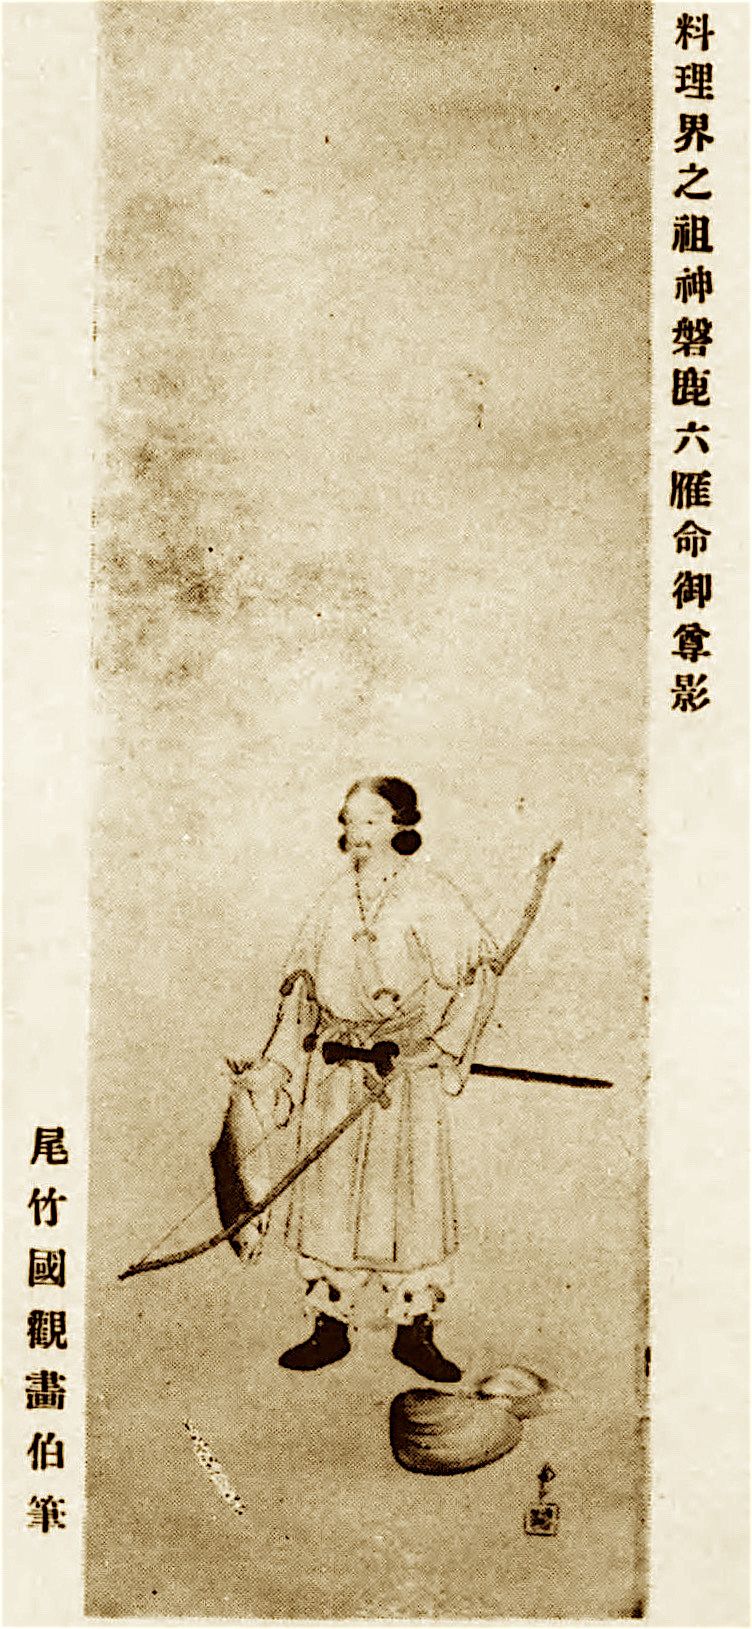 Iwaka Mutsukari no Mikoto. El primer Takahashi registrado en la literatura era su descendiente, al parecer. La obra es “Logros de Iwaka Mutsukari no Mikoto, fundador de la cocina del país; santuario Takabe. (Archivo de la Biblioteca Nacional de la Dieta)